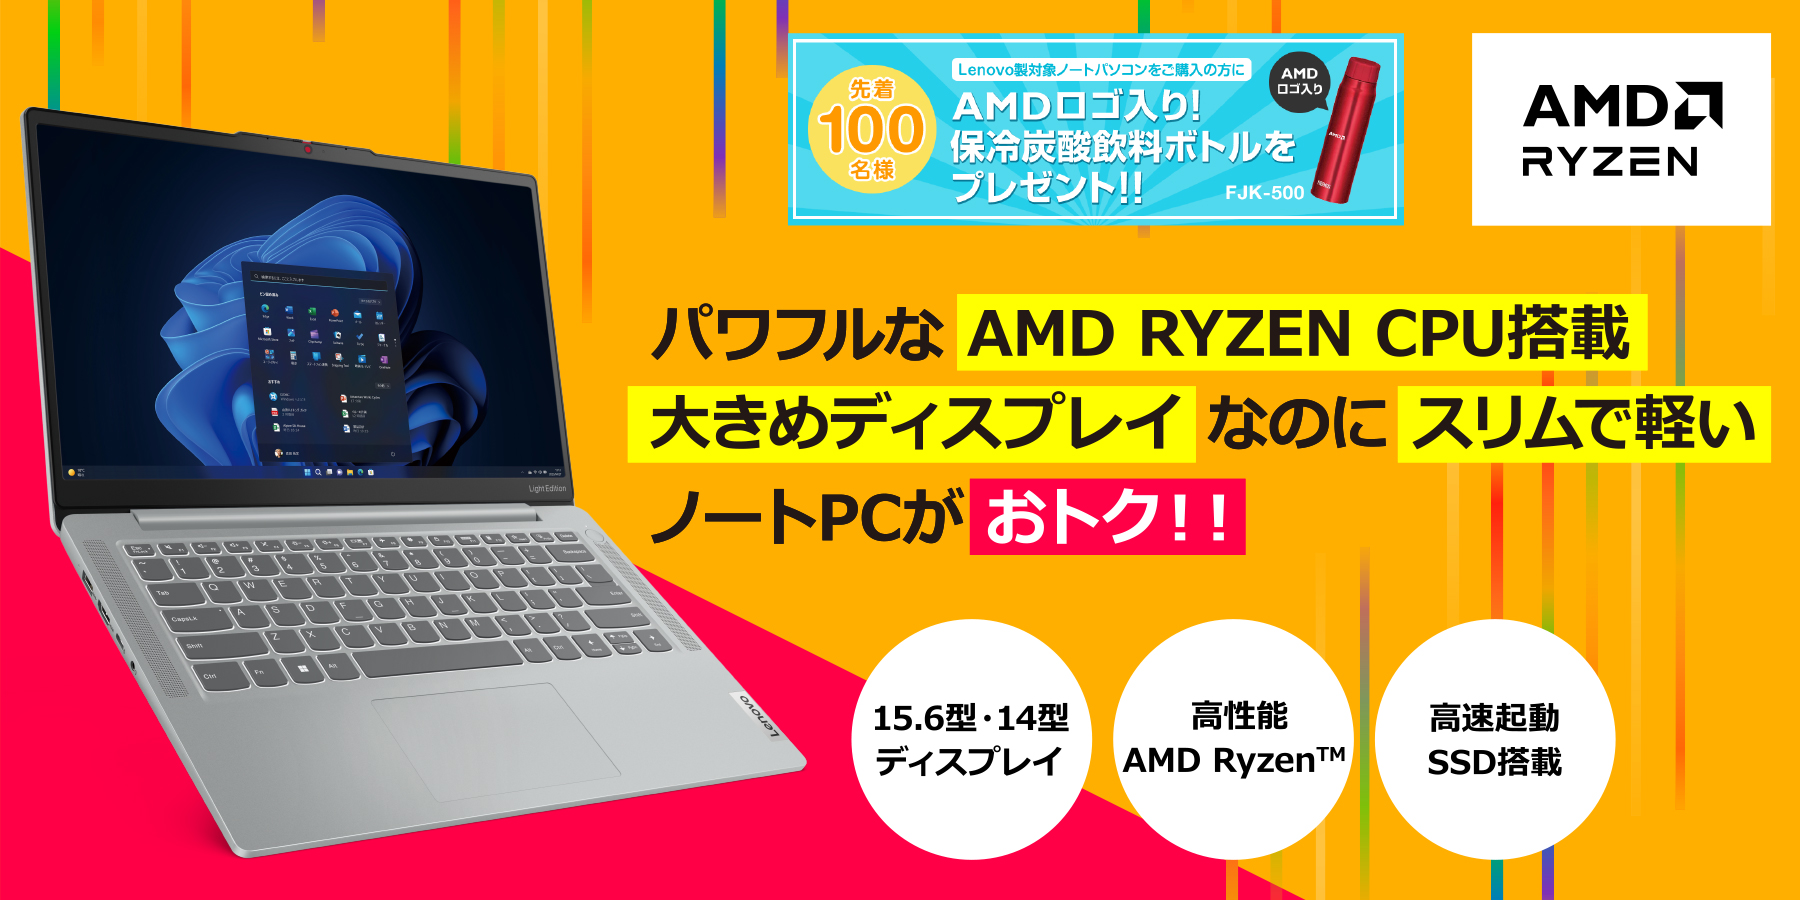 パワフルな AMD RYZEN CPU搭載大きめディスプレイなのにスリムで軽い